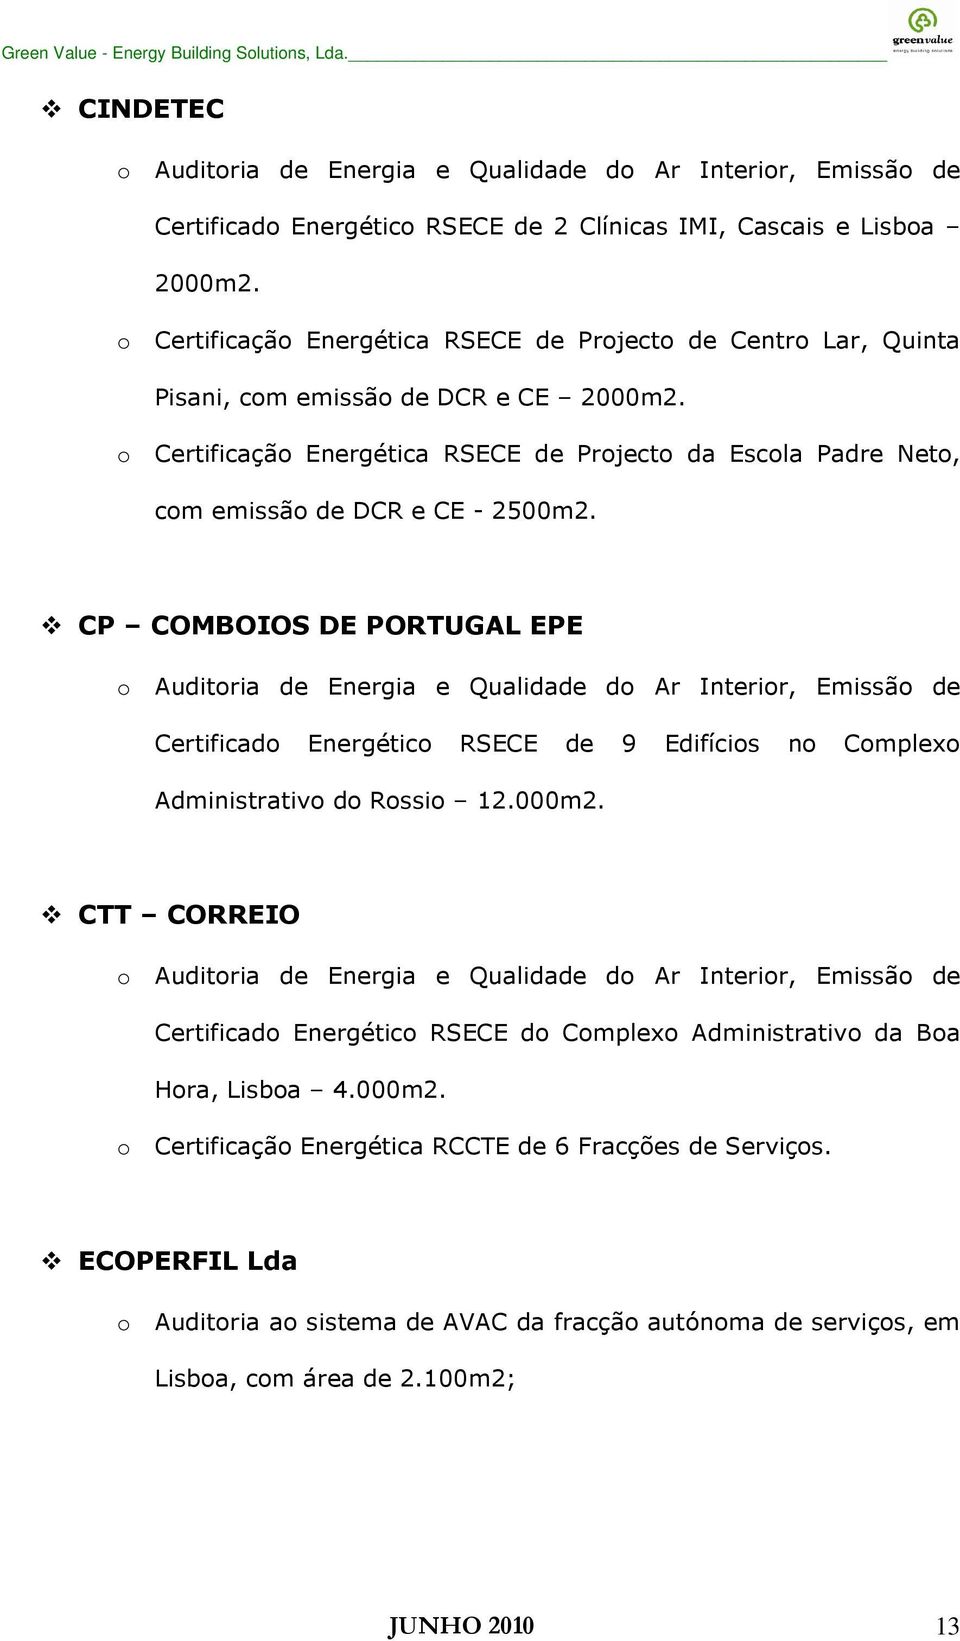 o Certificação Energética RSECE de Projecto da Escola Padre Neto, com emissão de DCR e CE - 2500m2.